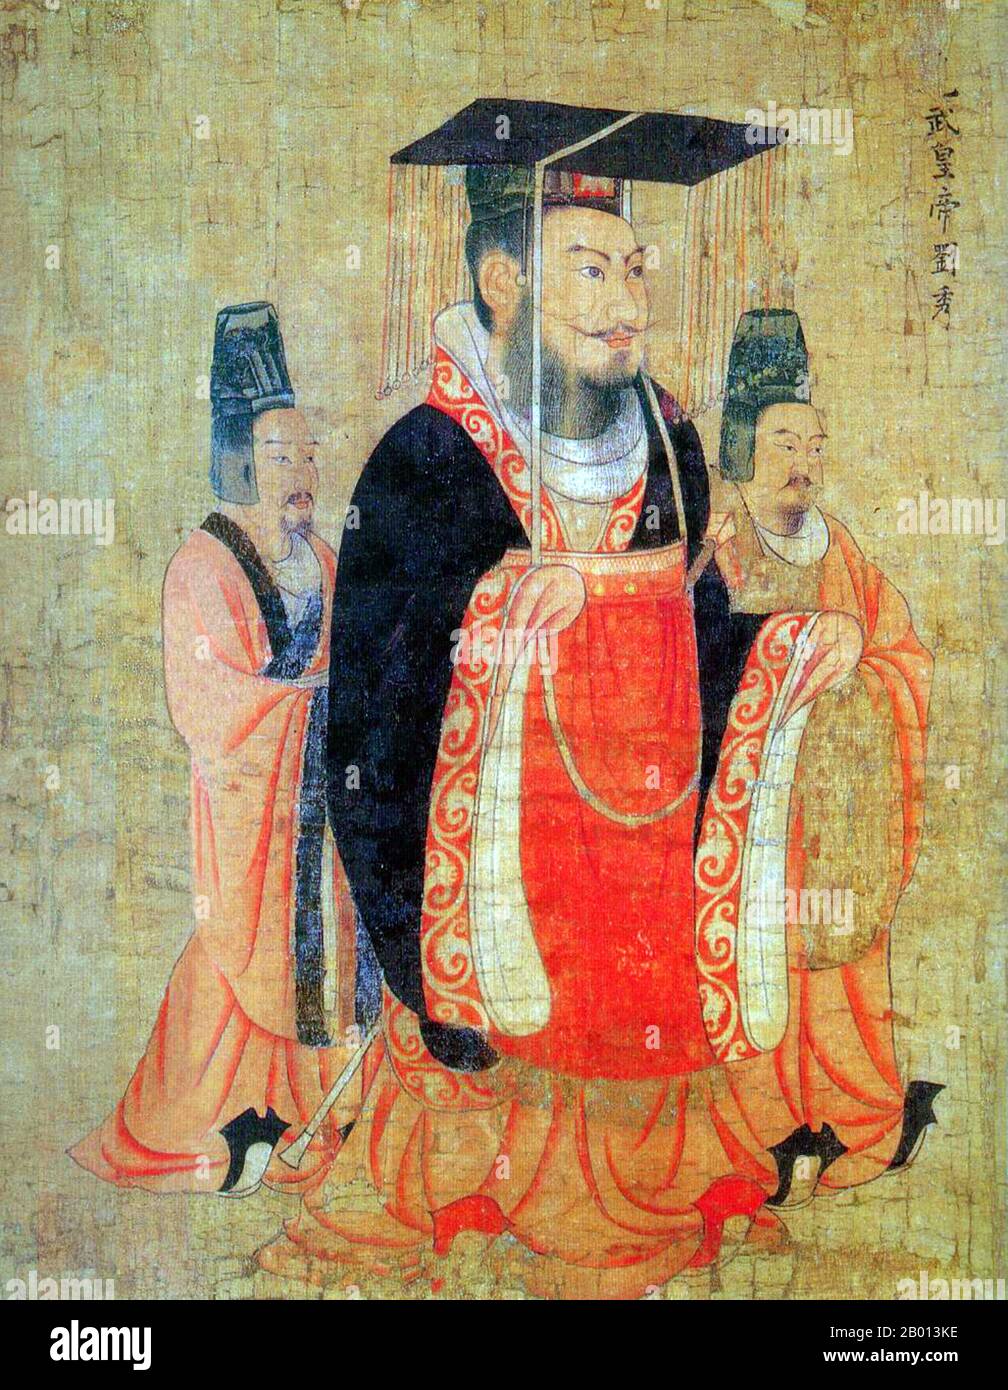 Cina: Imperatore Guangwu di Han (13 gennaio 5 a.C. – 29 marzo 57). Pittura di Handscroll dal 'Thirteen imperors Scroll' di Yan Liben, pittore di corte della dinastia Tang (600-673), VII secolo. L'imperatore Guangwu, nato Liu Xiu, fu un imperatore della dinastia cinese Han, restauratore della dinastia nel 25 e quindi fondatore dell'Han o Han orientale (la dinastia Han restaurata). In un primo momento governò alcune parti della Cina, e attraverso la repressione e la conquista dei signori della guerra regionali, l'intera Cina fu consolidata al momento della sua morte nel 57 d.C. Foto Stock